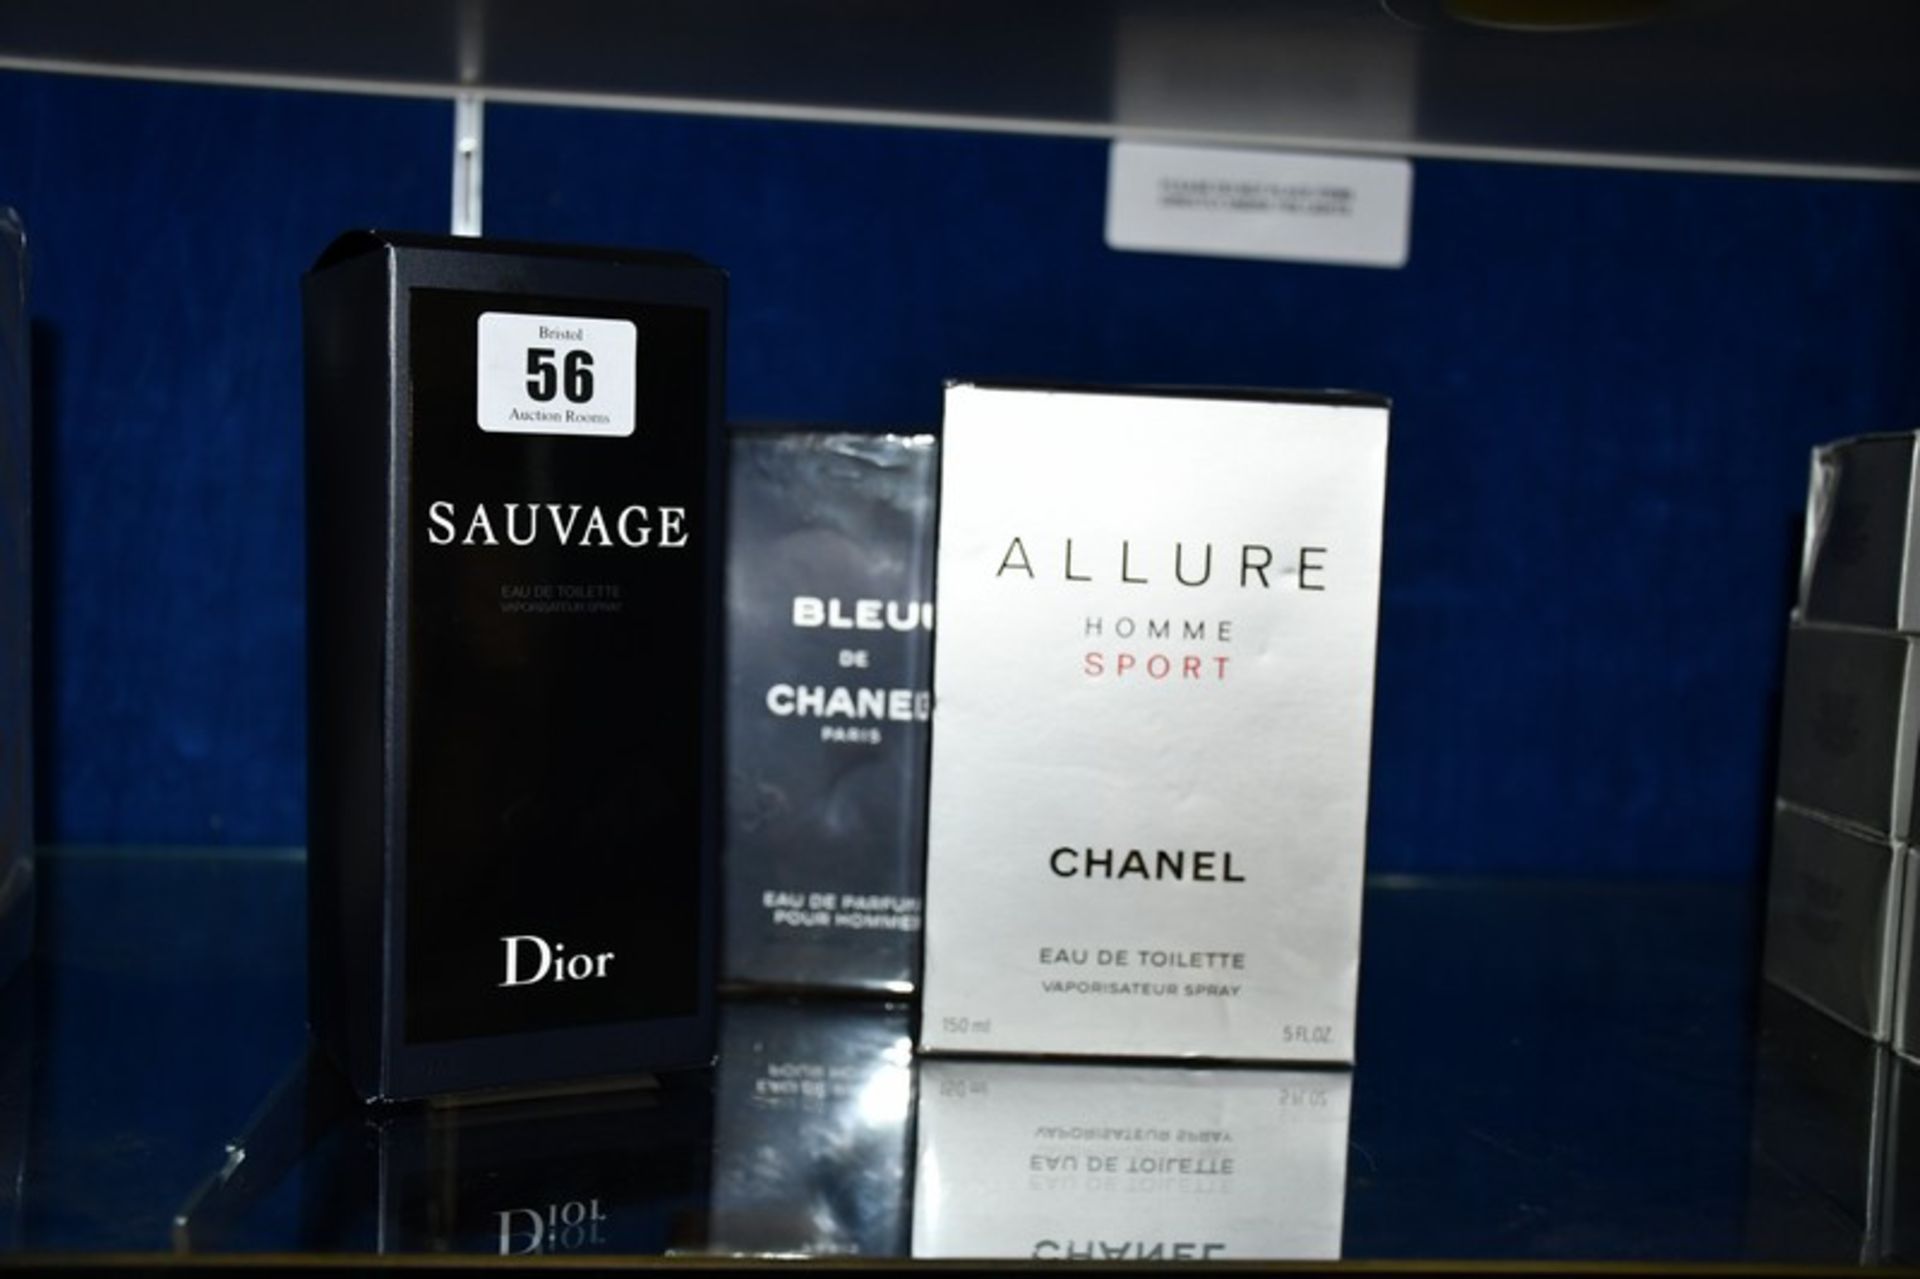 Chanel Bleu eau de parfum pour homme eau de parfum (150ml) and Chanel Allure homme sport eau de